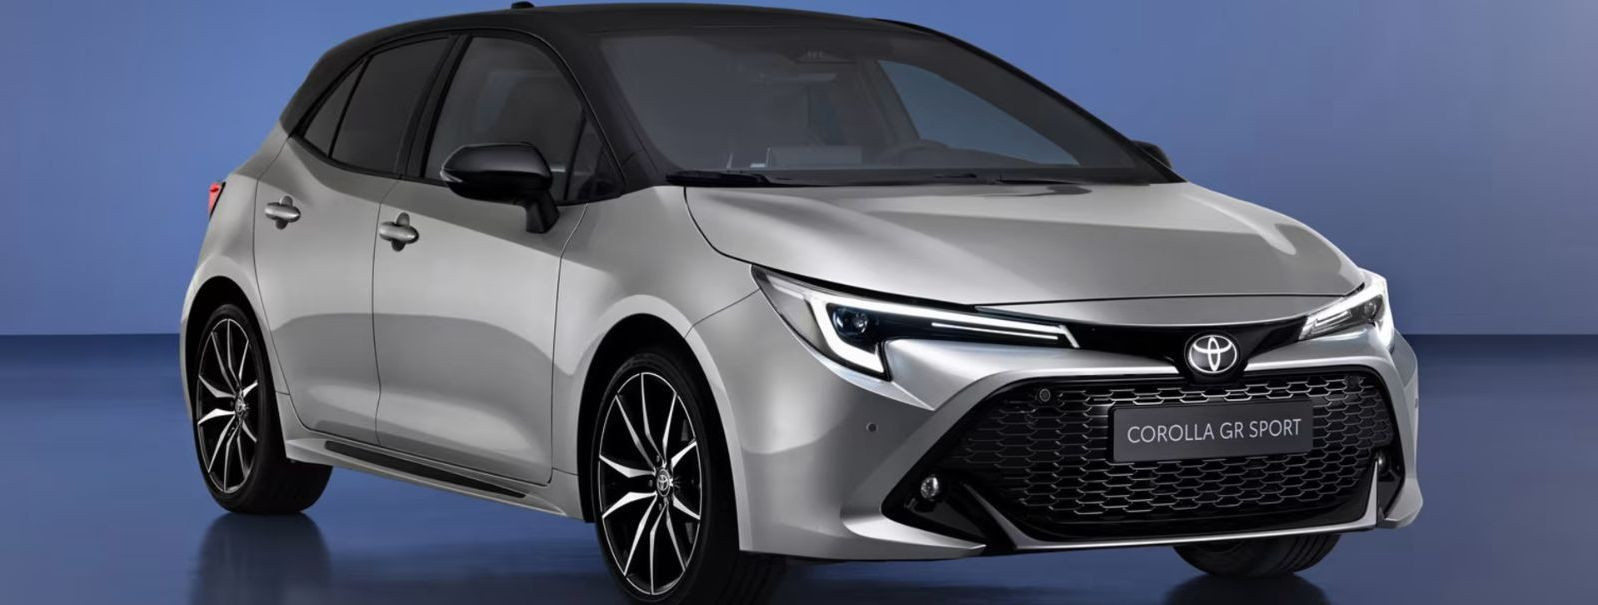 Toyota ja Lexus on end autotööstuse liidritena tõestanud, olles tuntud oma usaldusväärsuse, vastupidavuse ja kvaliteedi poolest. Need brändid on järjepidevalt o